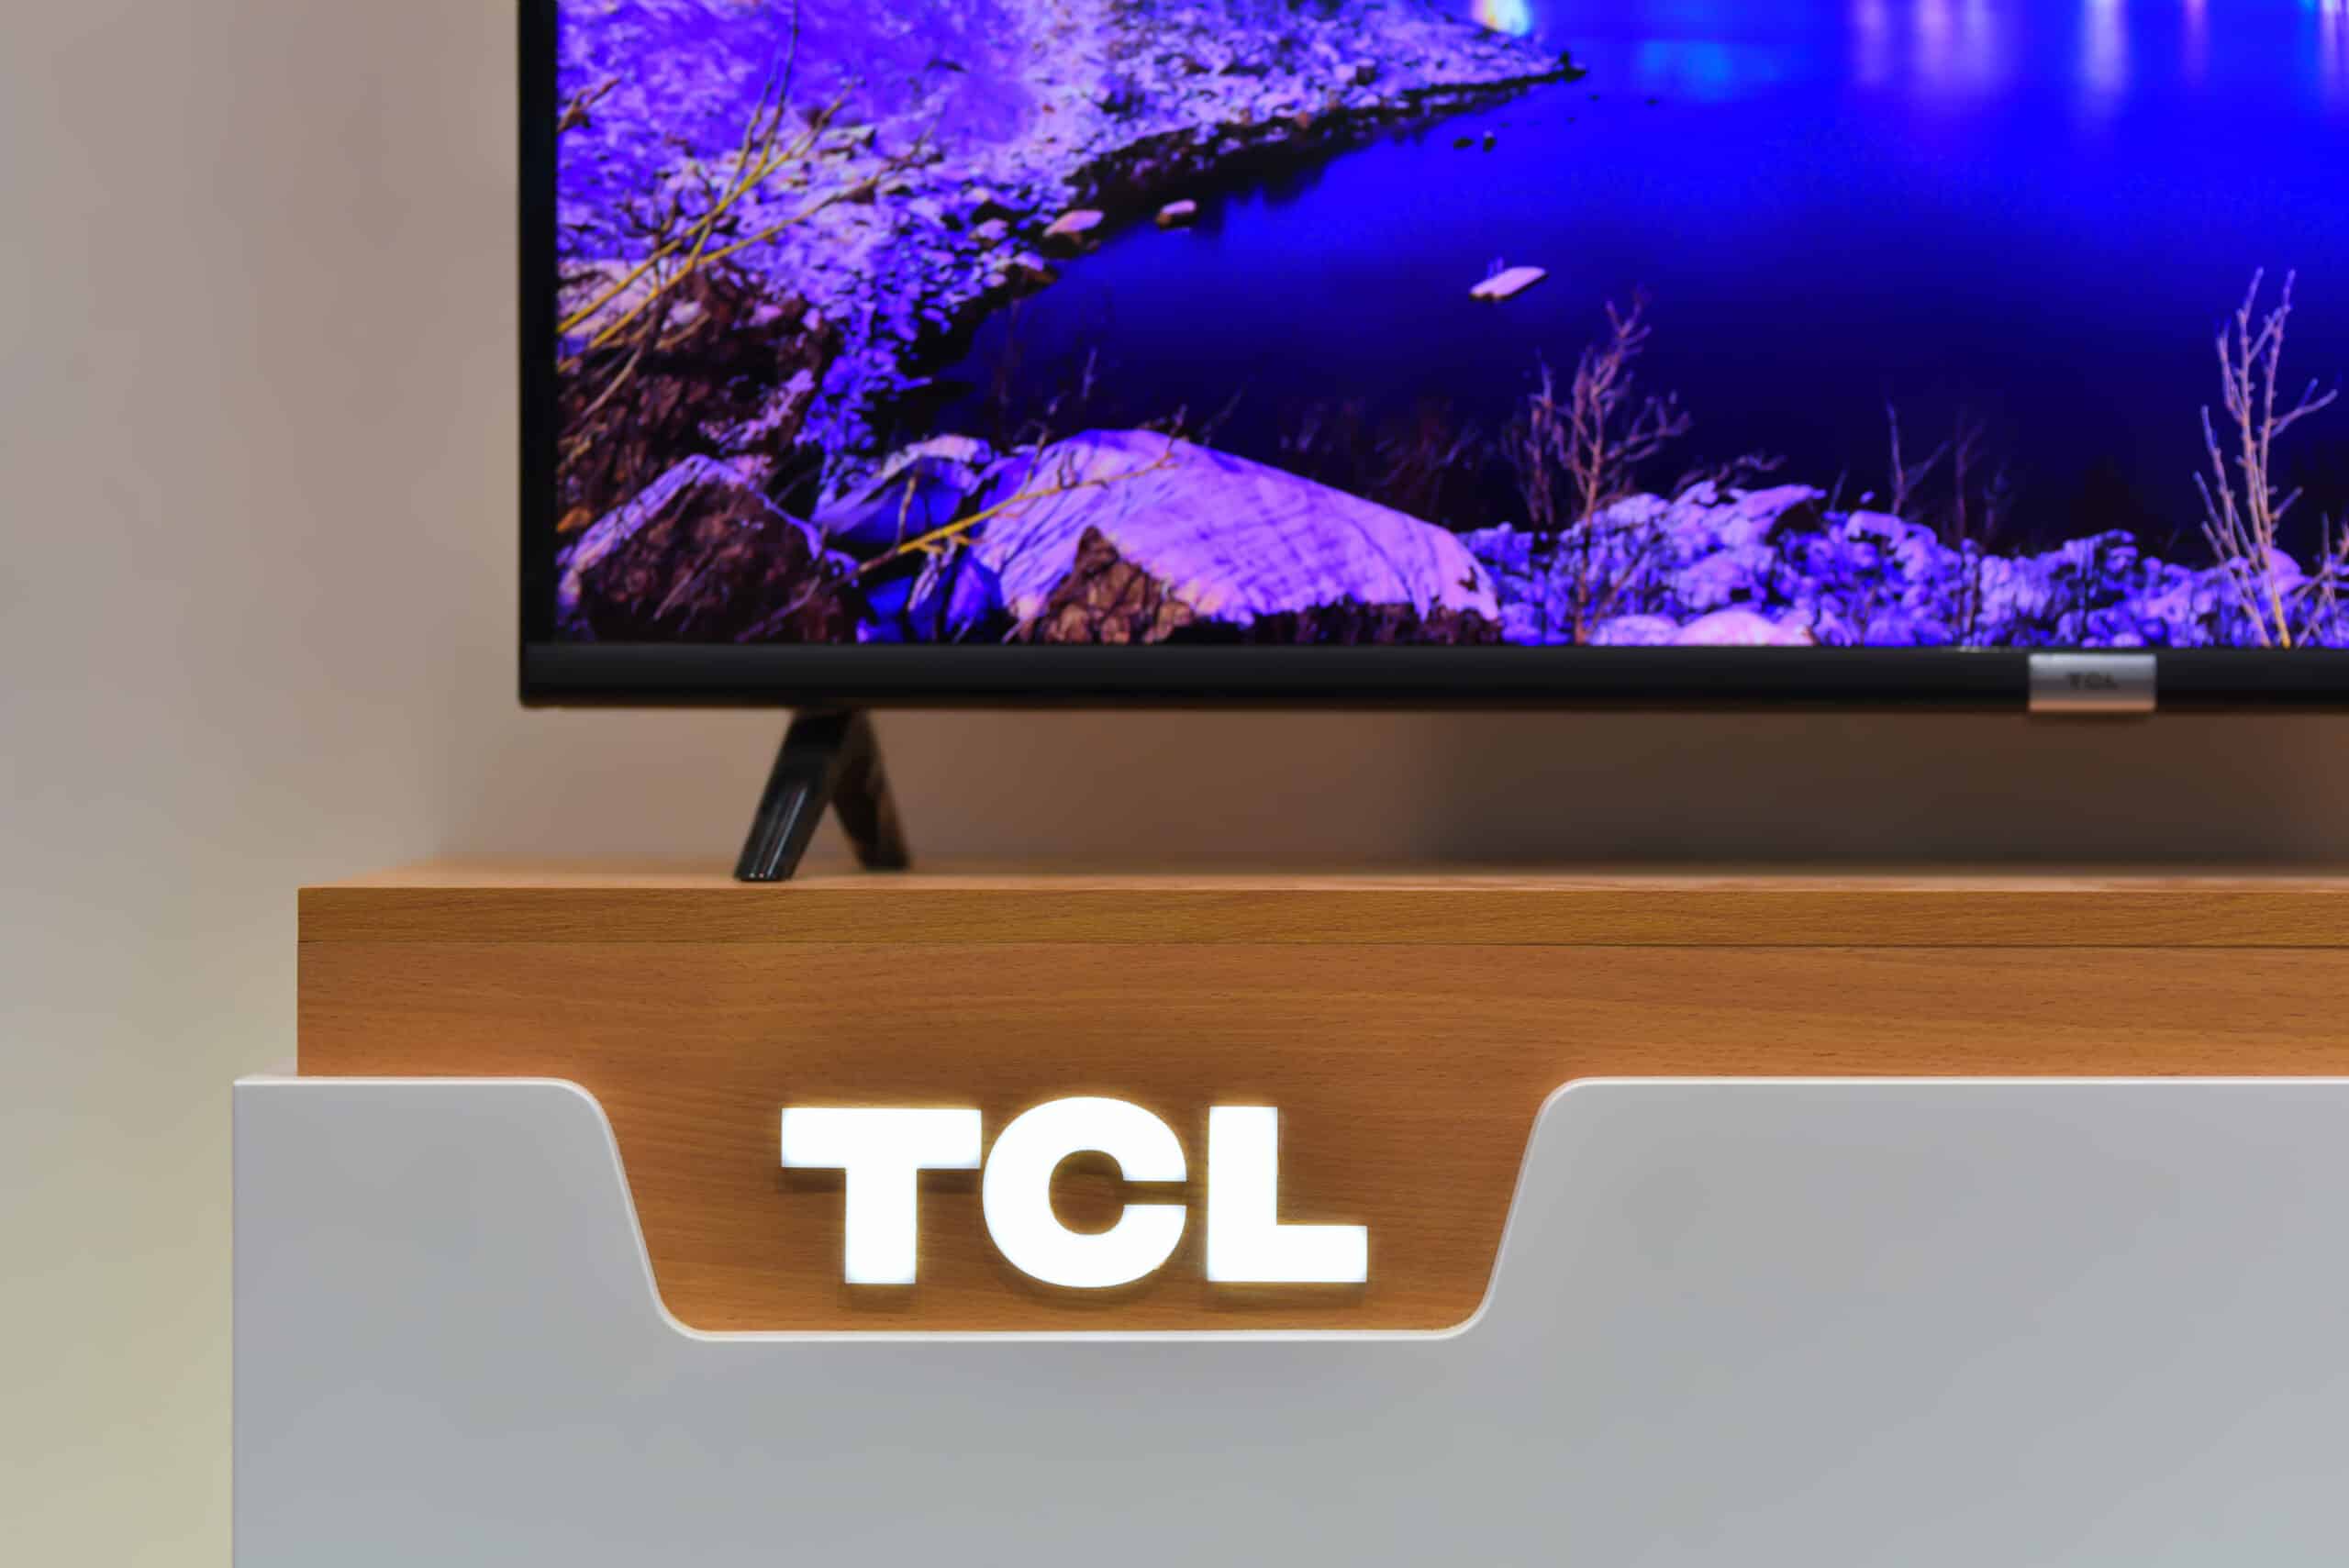 TCL vs LG